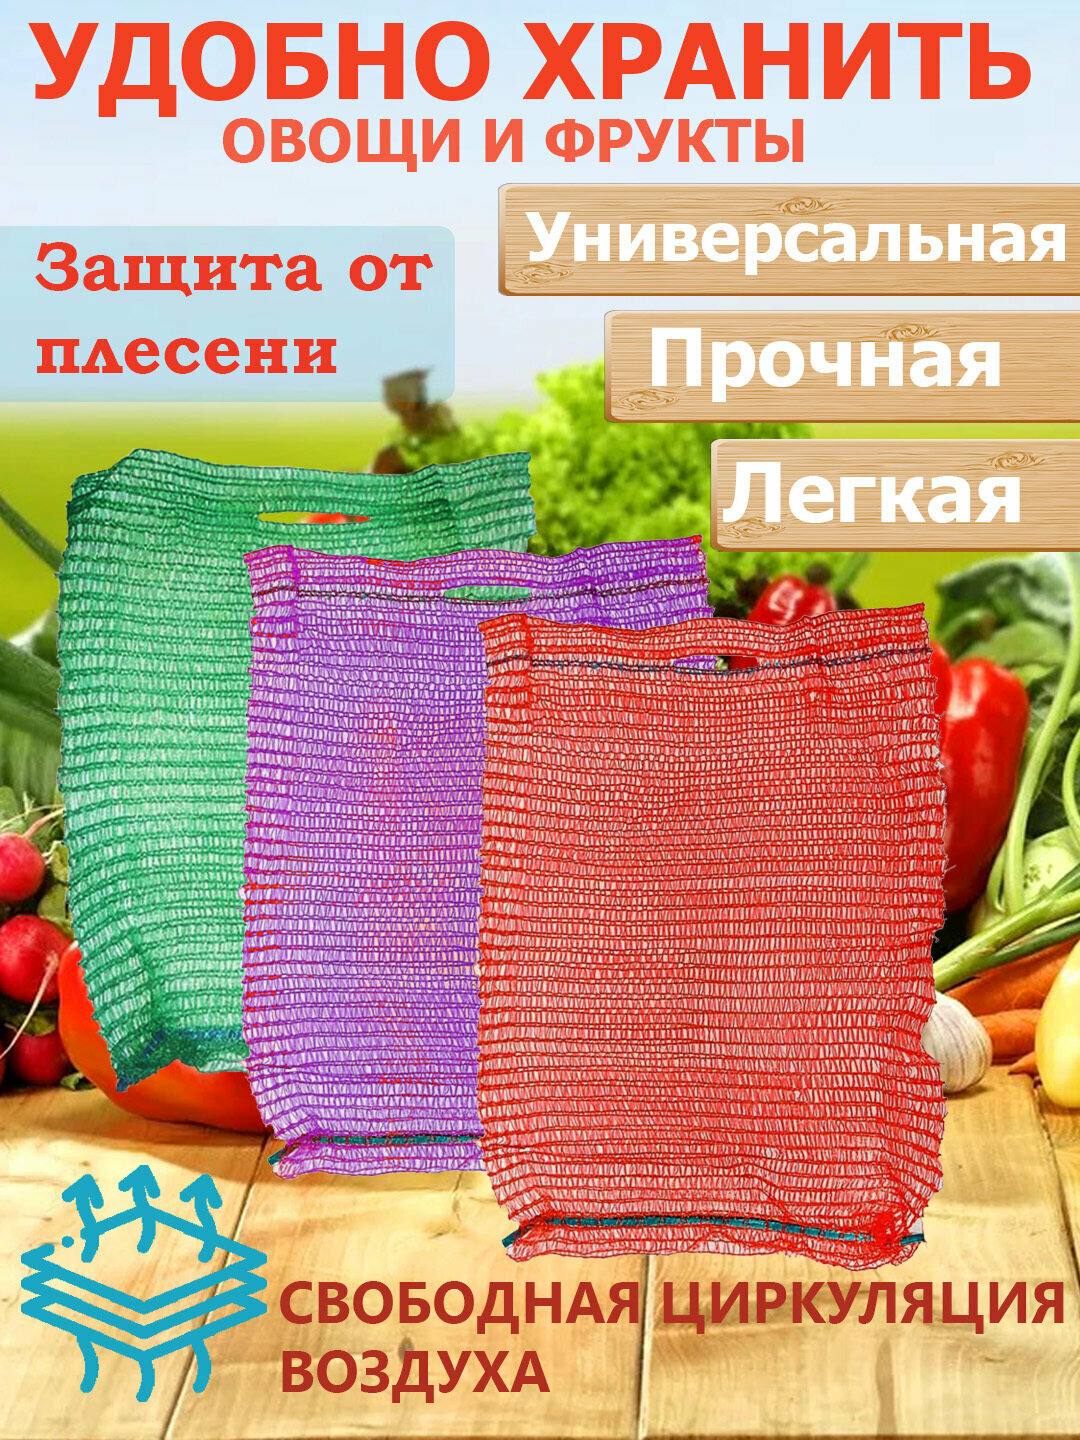 Сетка для овощей с завязками 25 шт. 25*39 см, до 5 кг. Транспортировка и хранение овощей и фруктов.